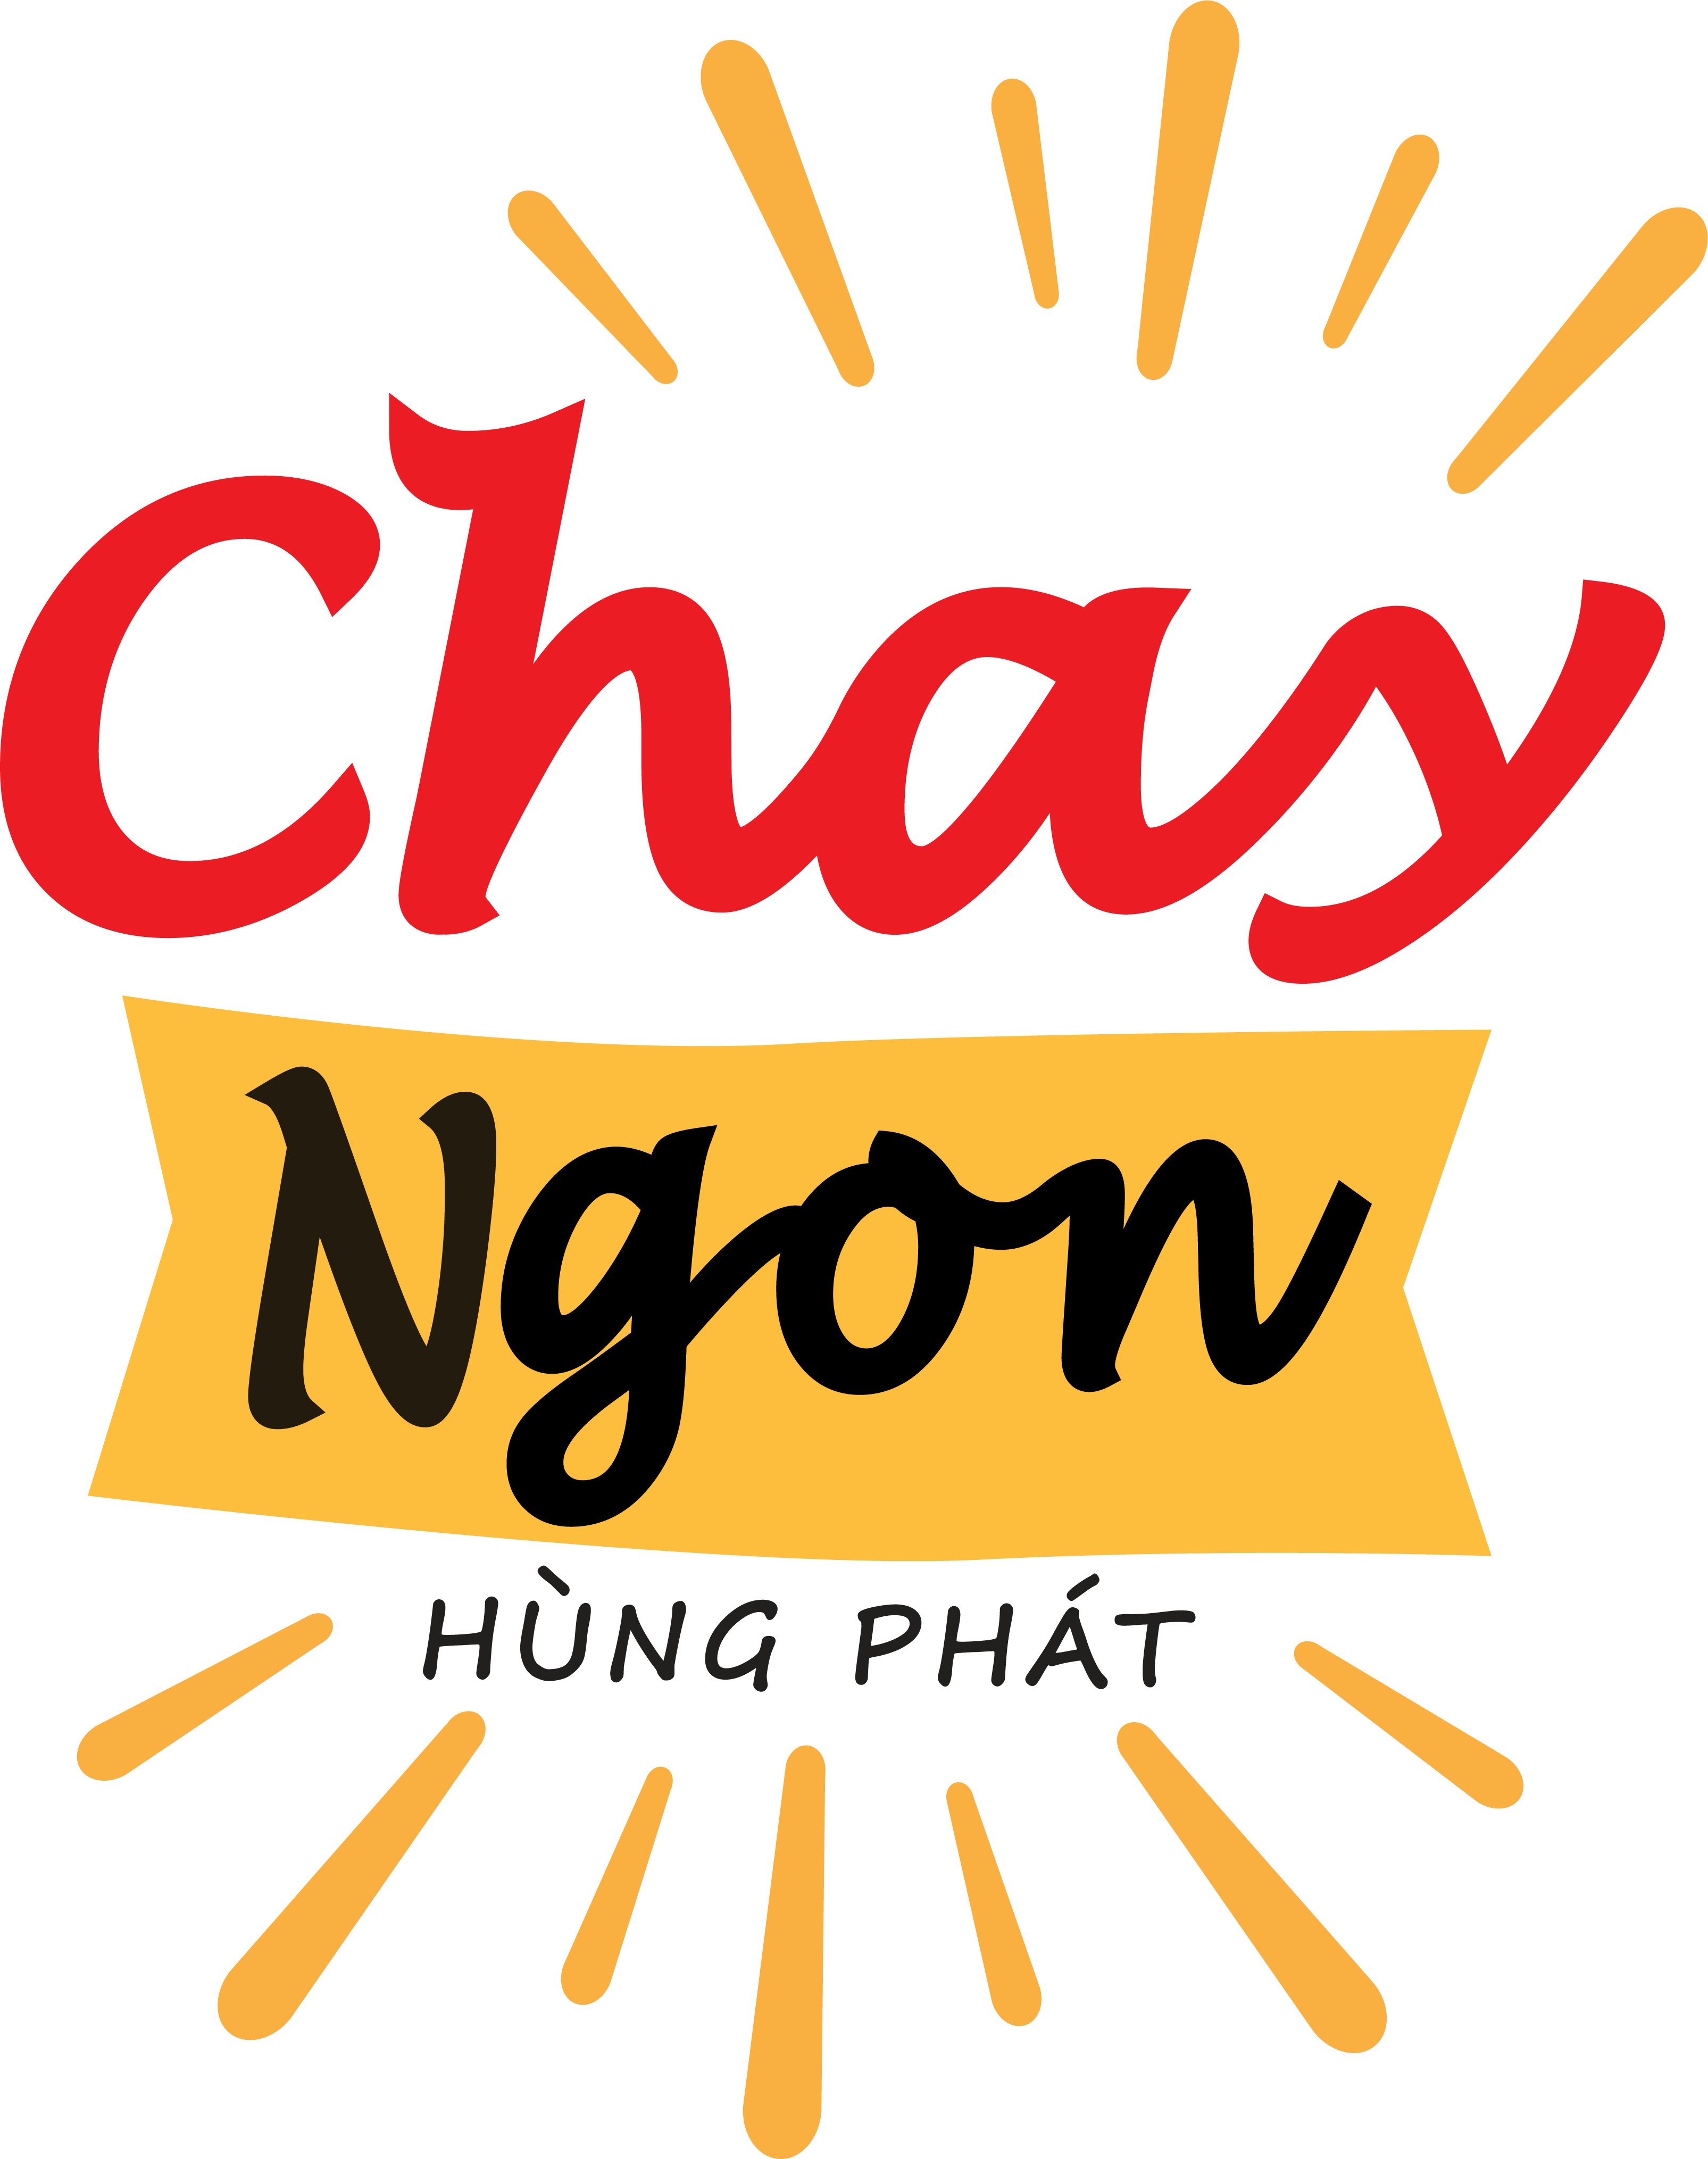 Shop Chay Ngon - Trà Hùng Phát